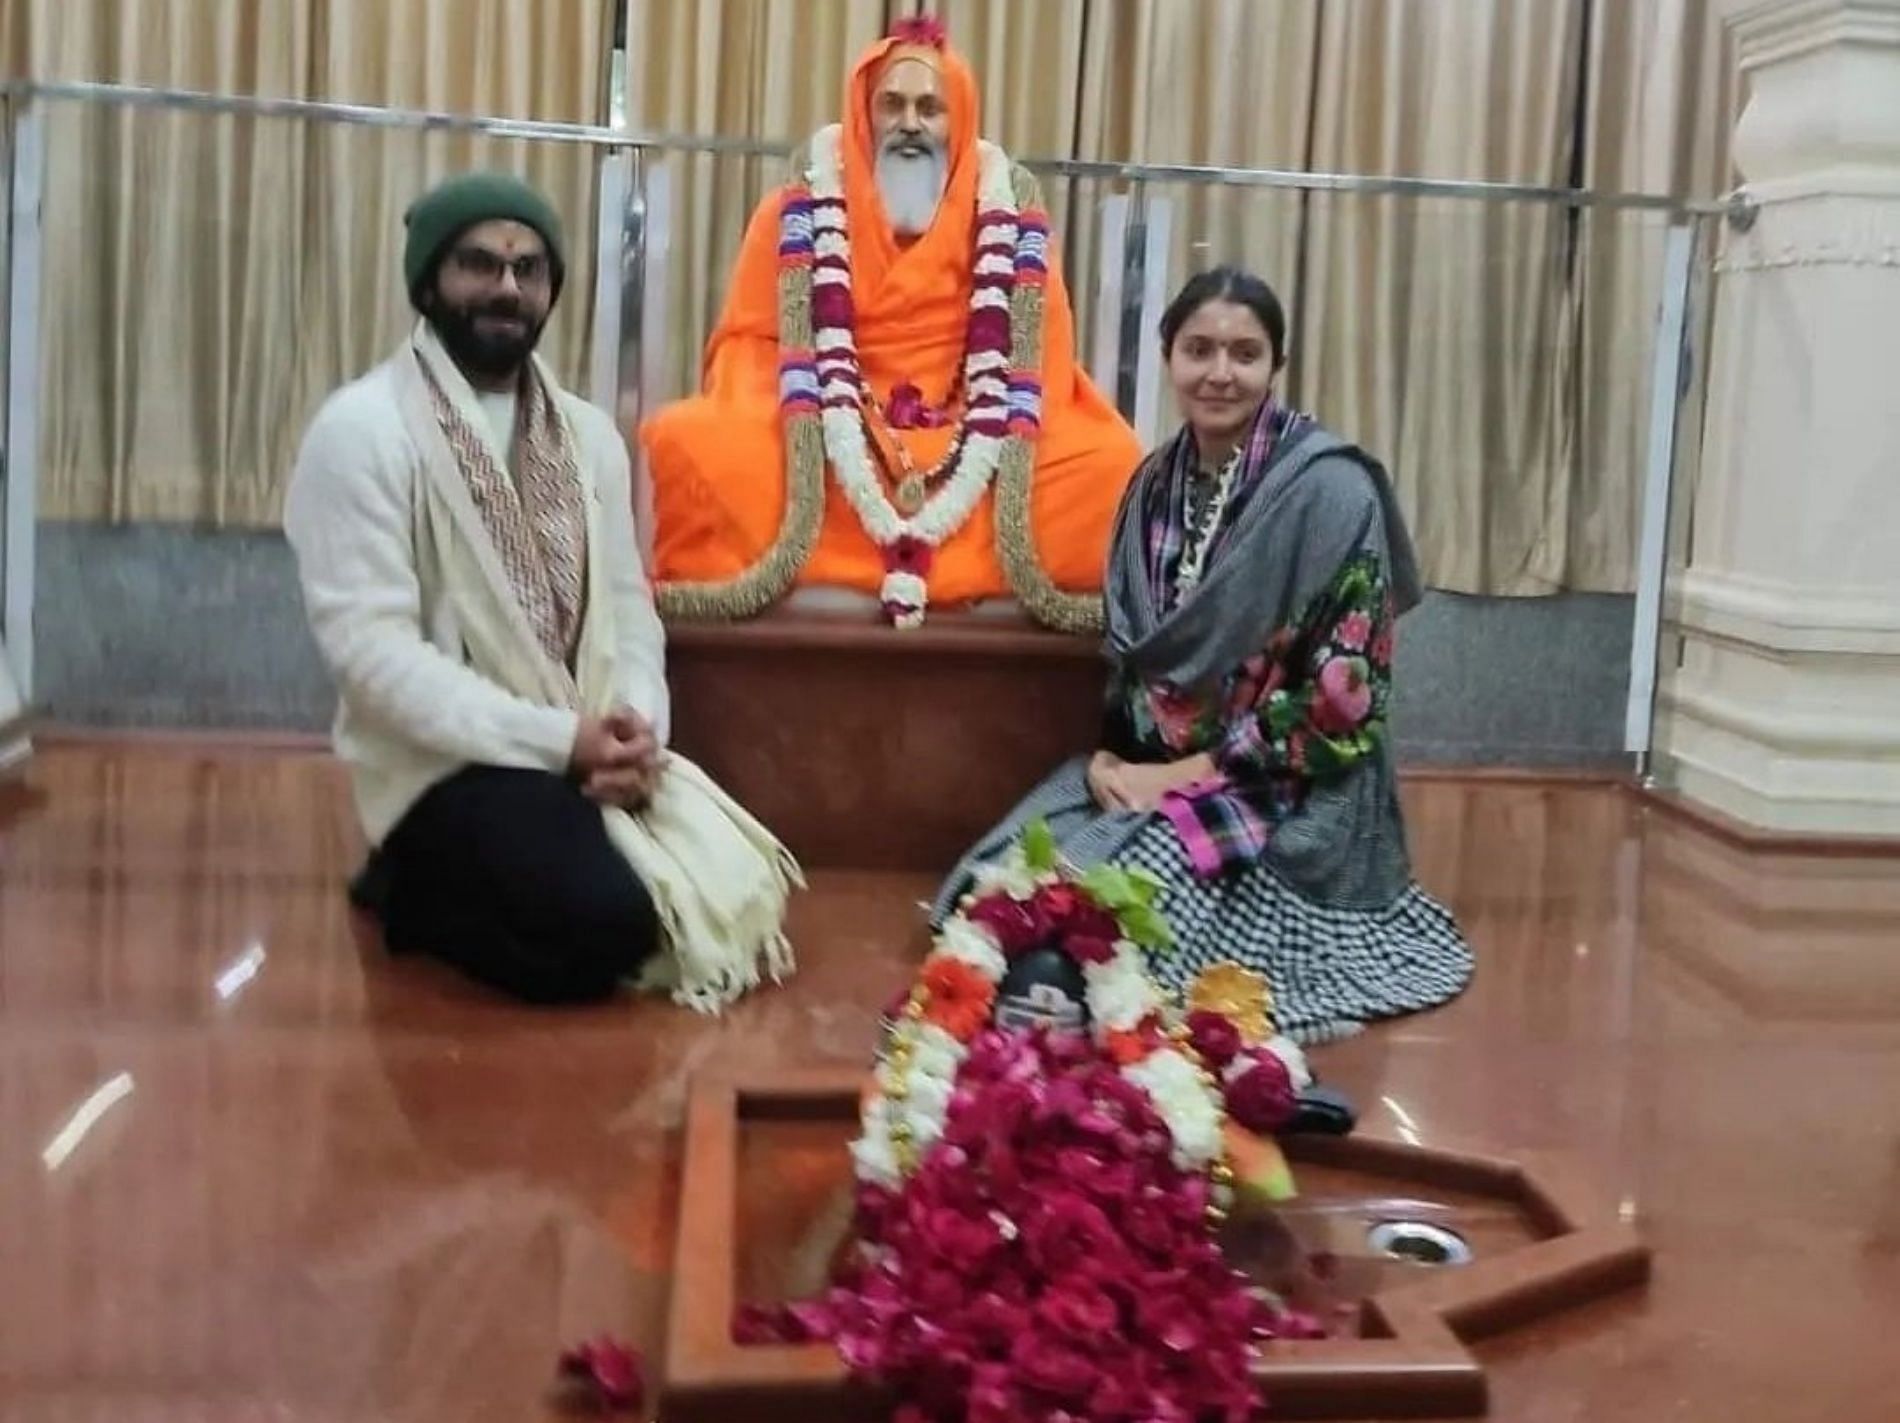 Virat Kohli and Anushka Sharma had earlier visited Neem Karoli Baba ashram in Uttarakhand.